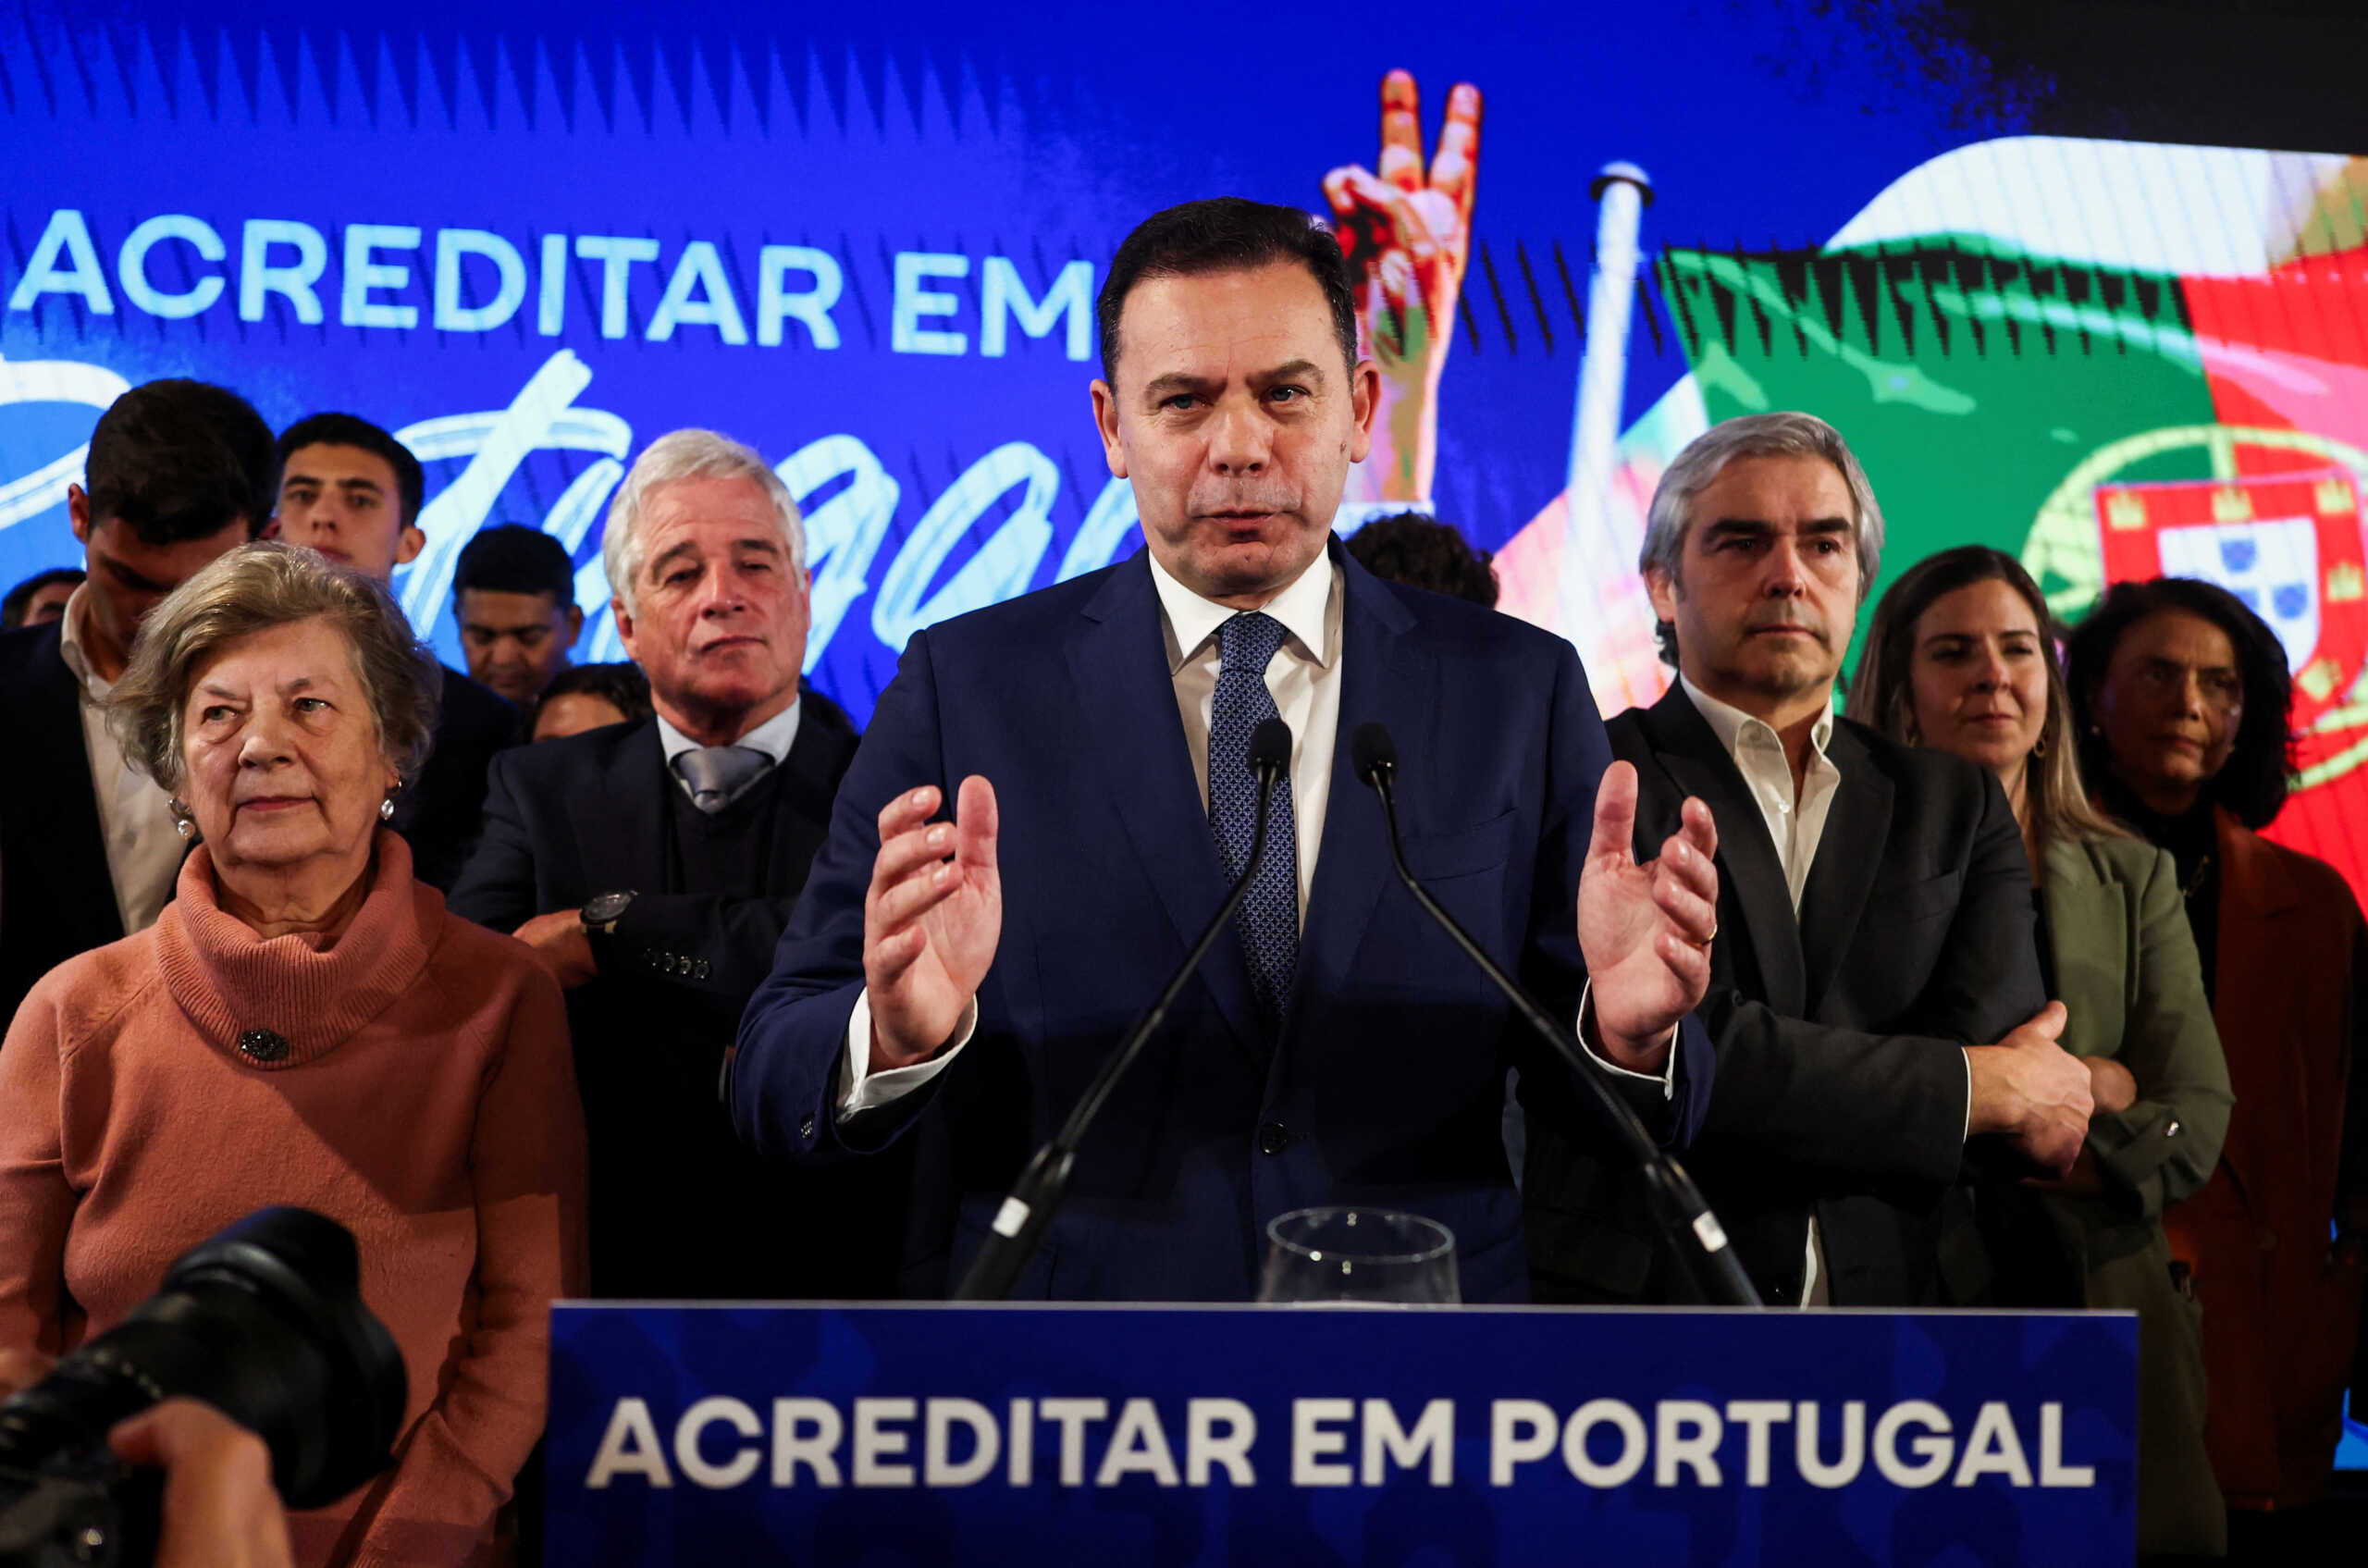 Οι εκλογές στην Πορτογαλία έδειξαν στην πράξη την αλματώδη άνοδο της Ακροδεξιάς